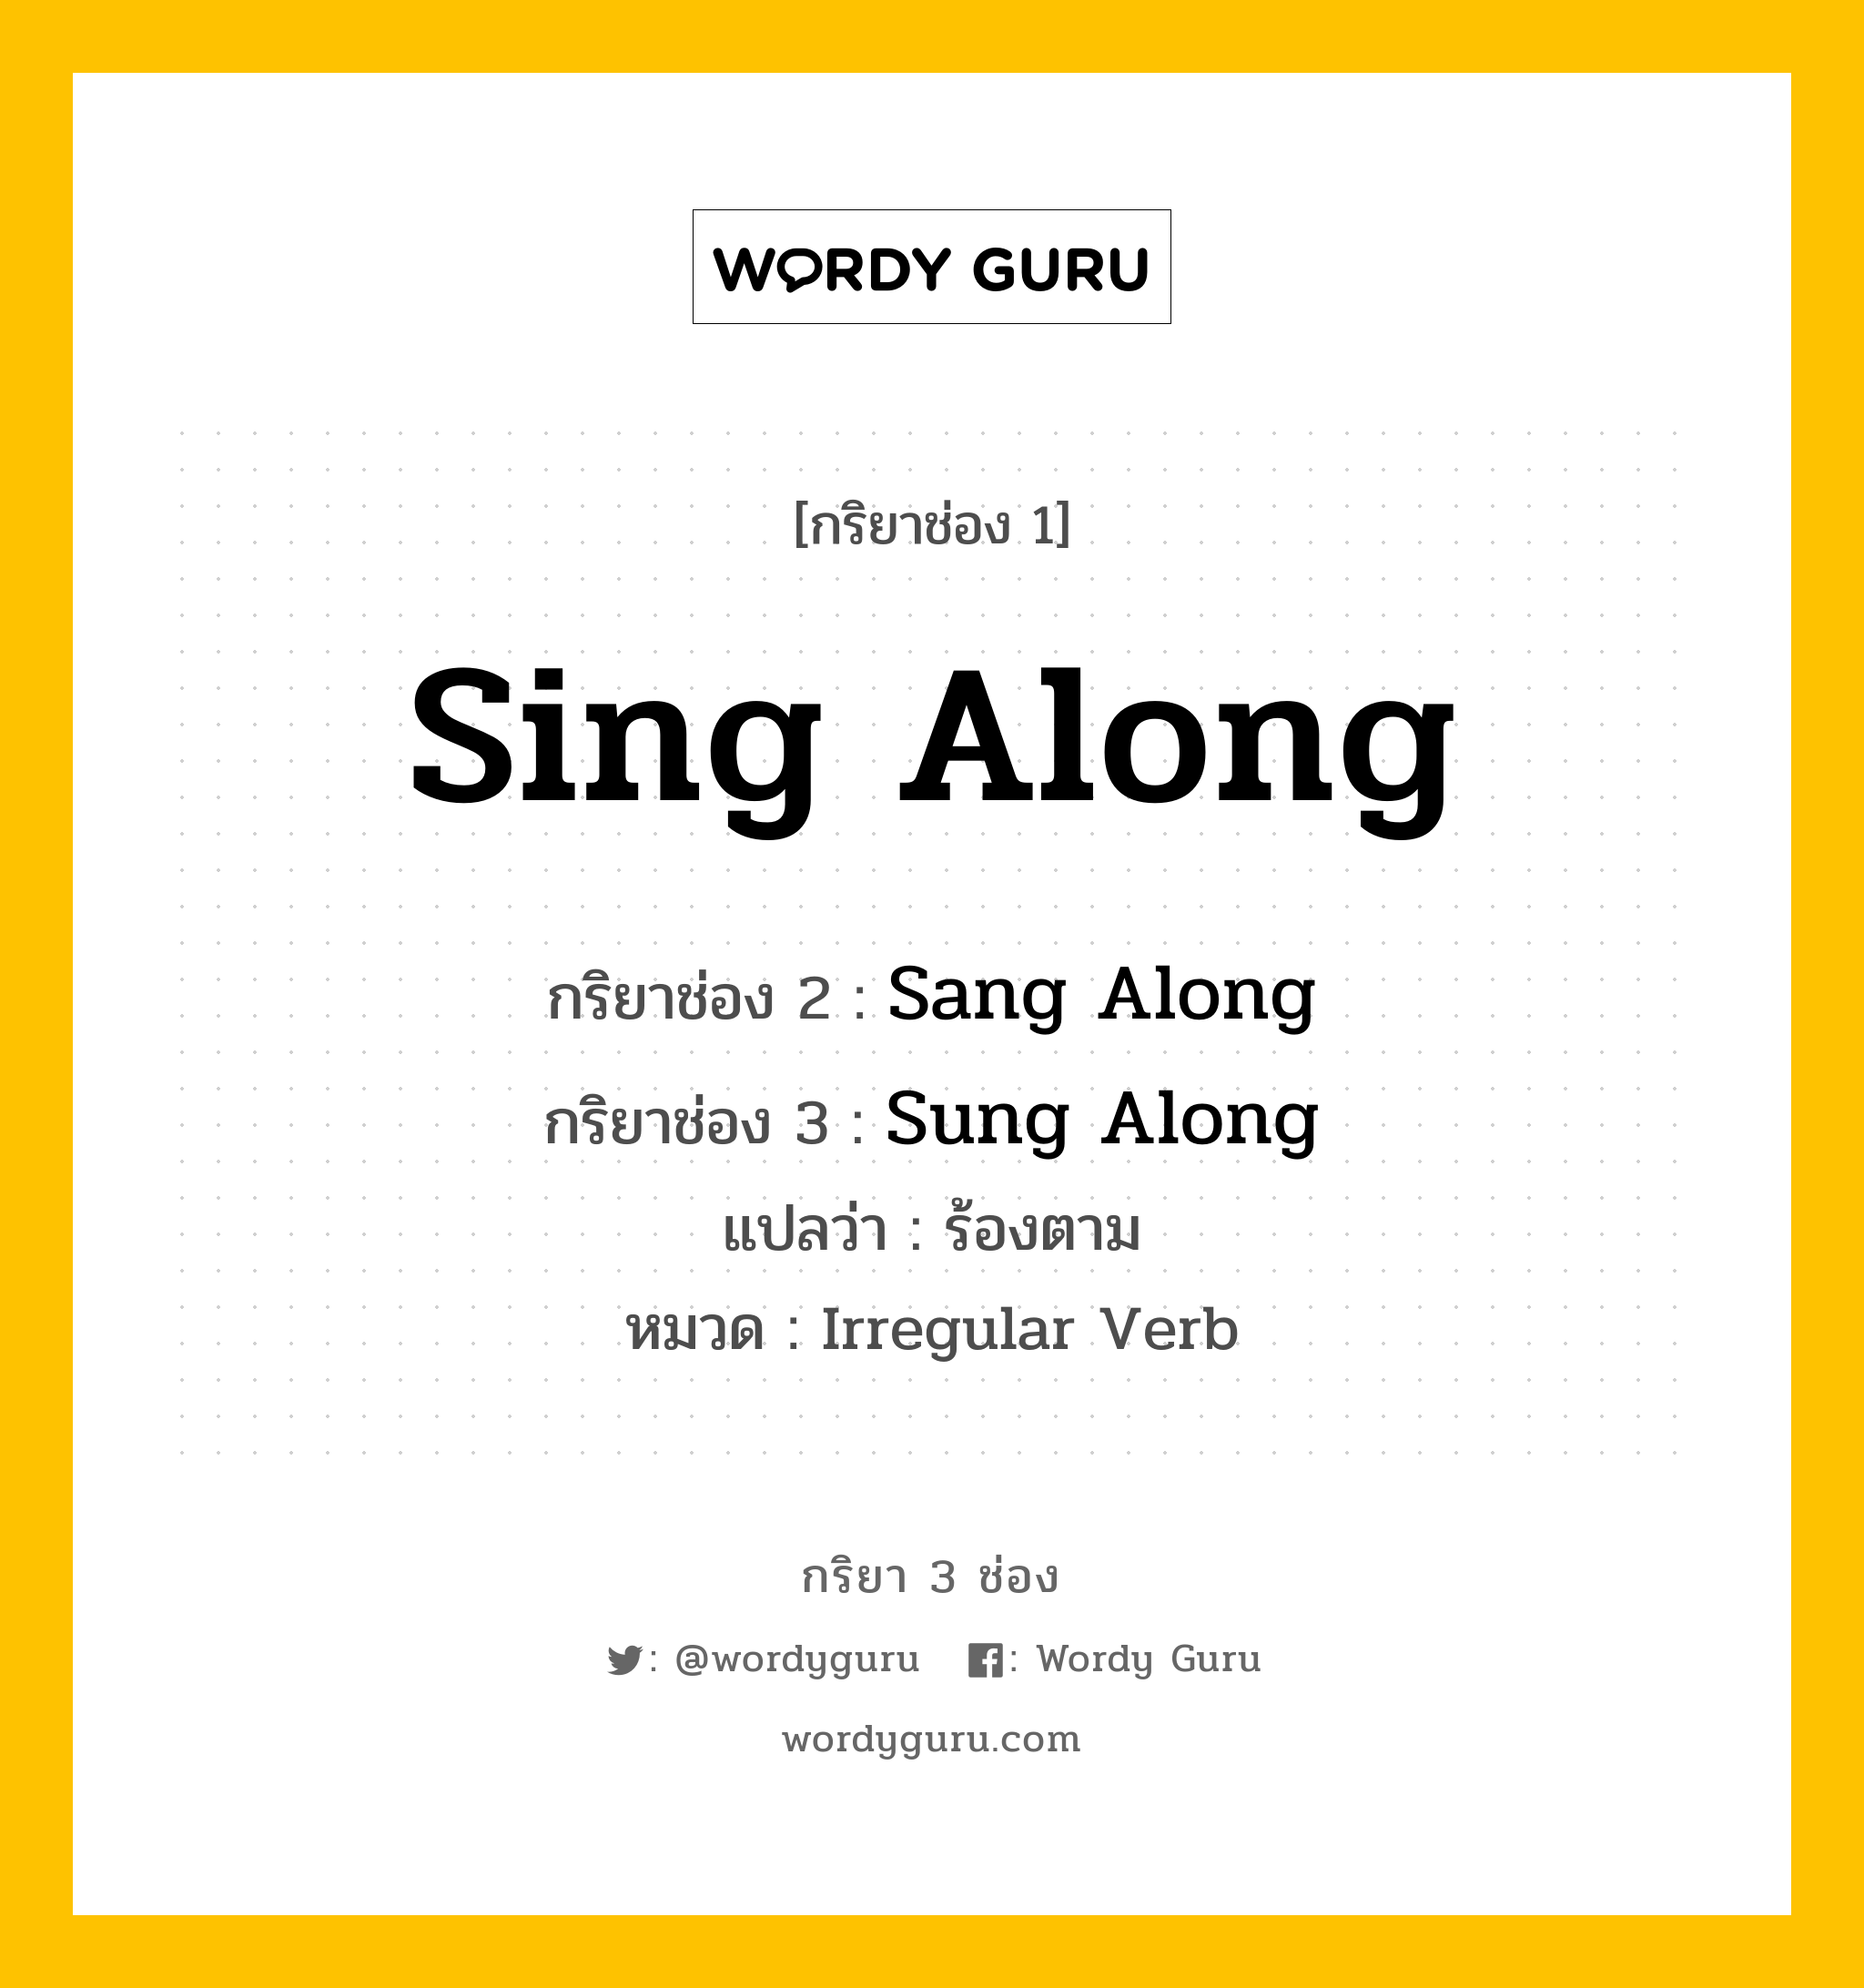 กริยา 3 ช่อง ของ Sing Along คืออะไร? มาดูคำอ่าน คำแปลกันเลย, กริยาช่อง 1 Sing Along กริยาช่อง 2 Sang Along กริยาช่อง 3 Sung Along แปลว่า ร้องตาม หมวด Irregular Verb หมวด Irregular Verb